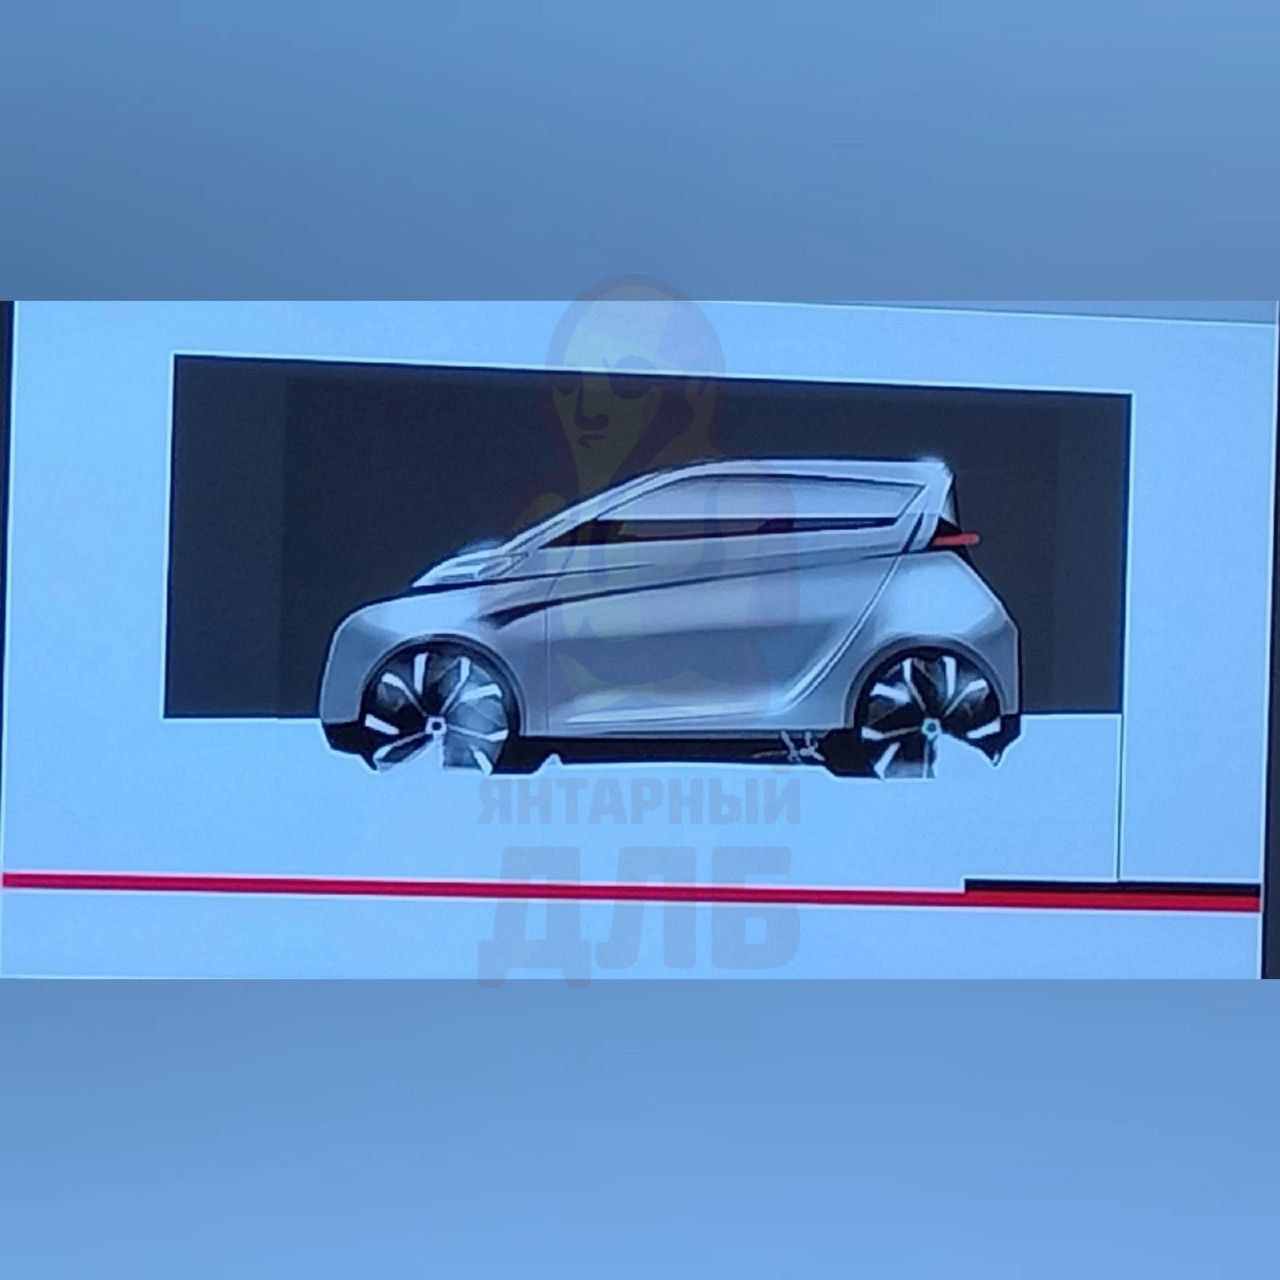 В Калининграде проектируют собственный автомобиль "Янтарь" 